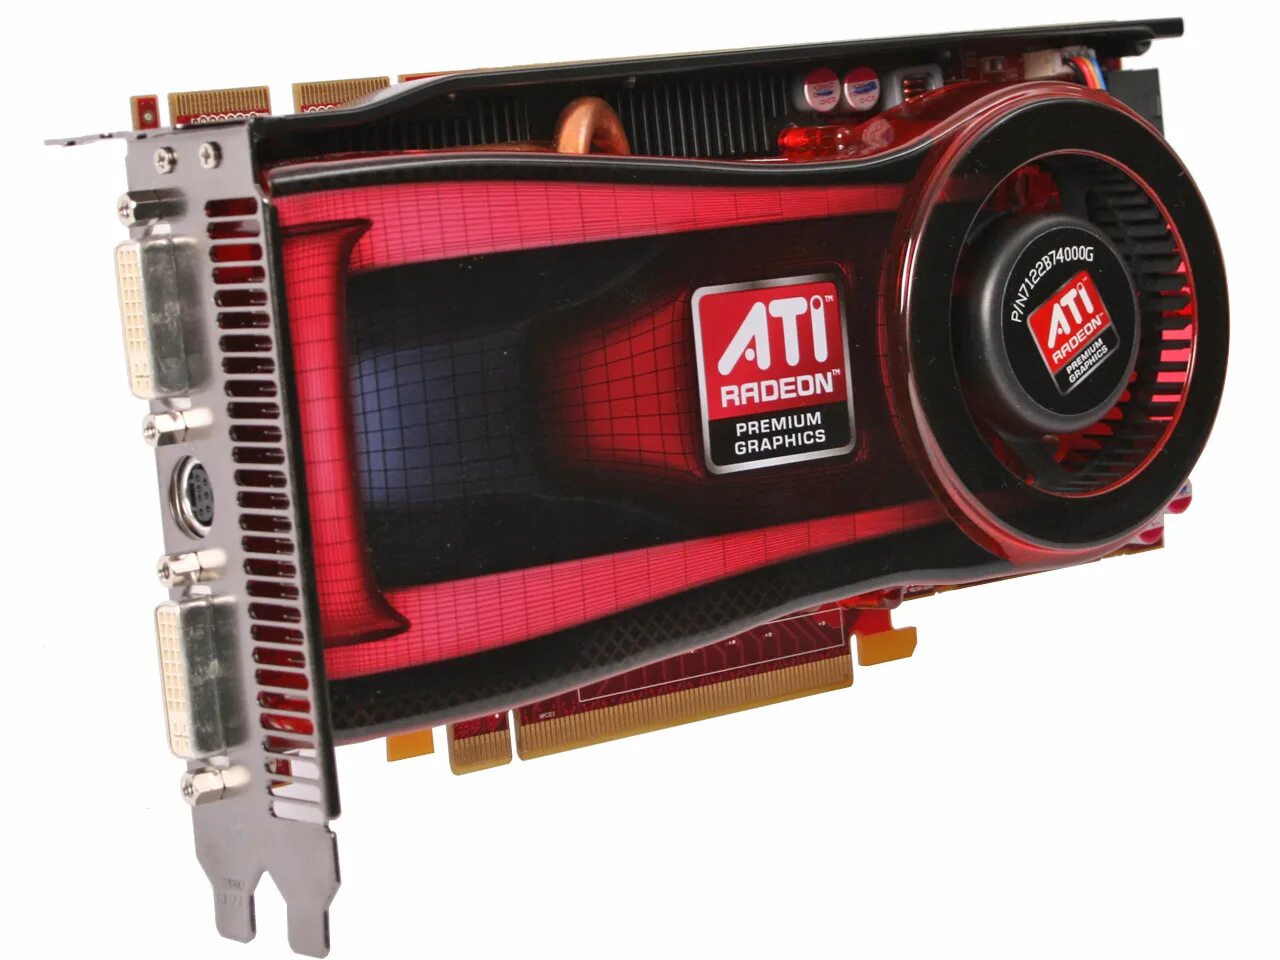 AMD ATI Radeon.